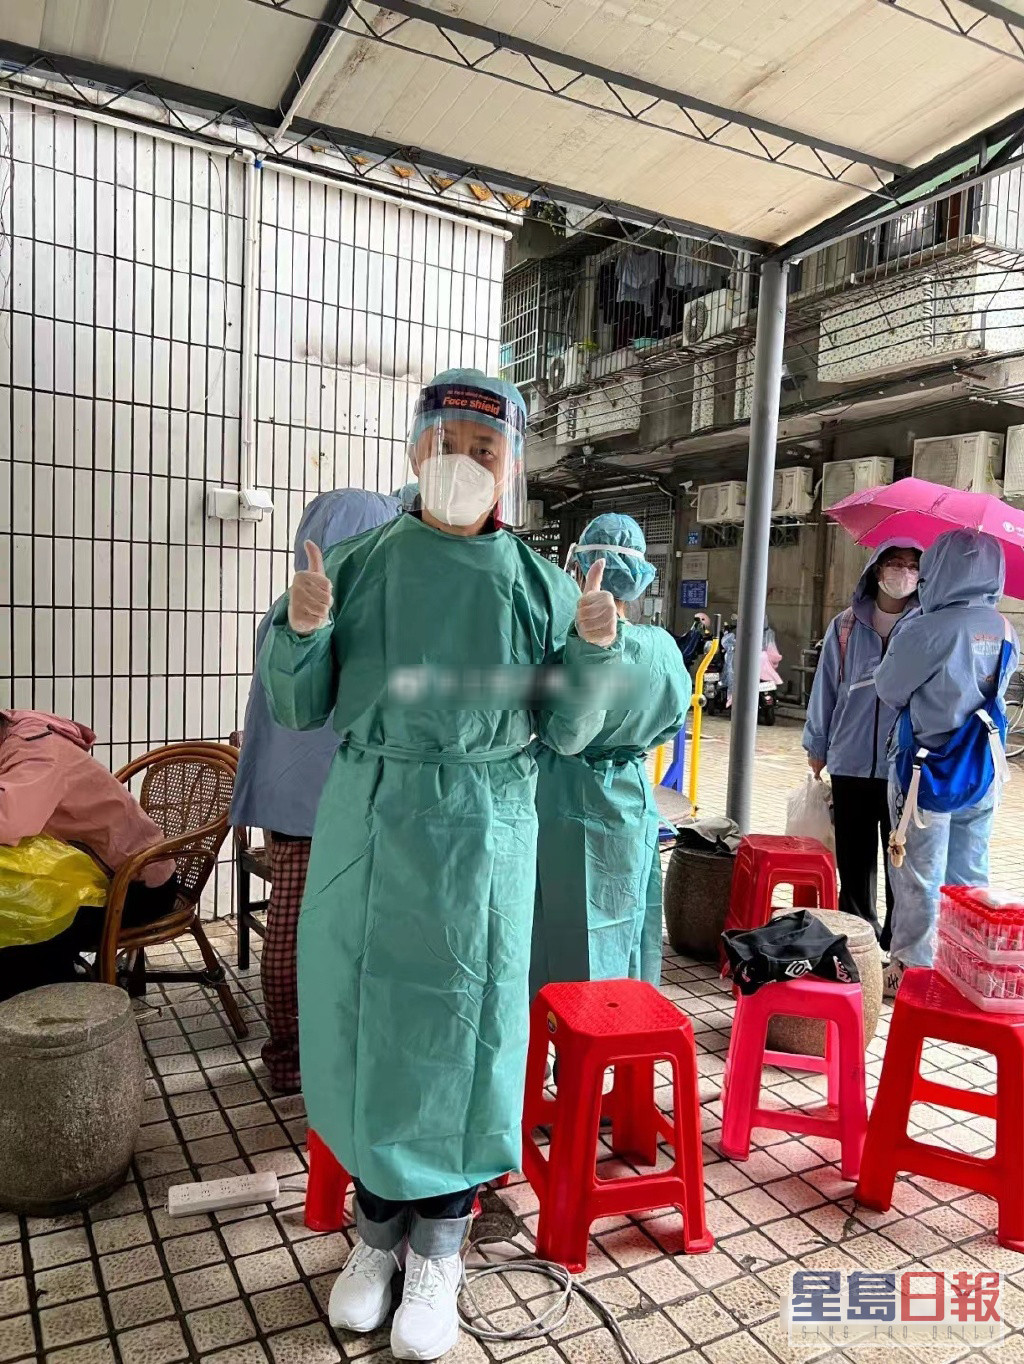 日前曹永廉冒風雨在廣州某核酸檢測站做前線防疫義工。